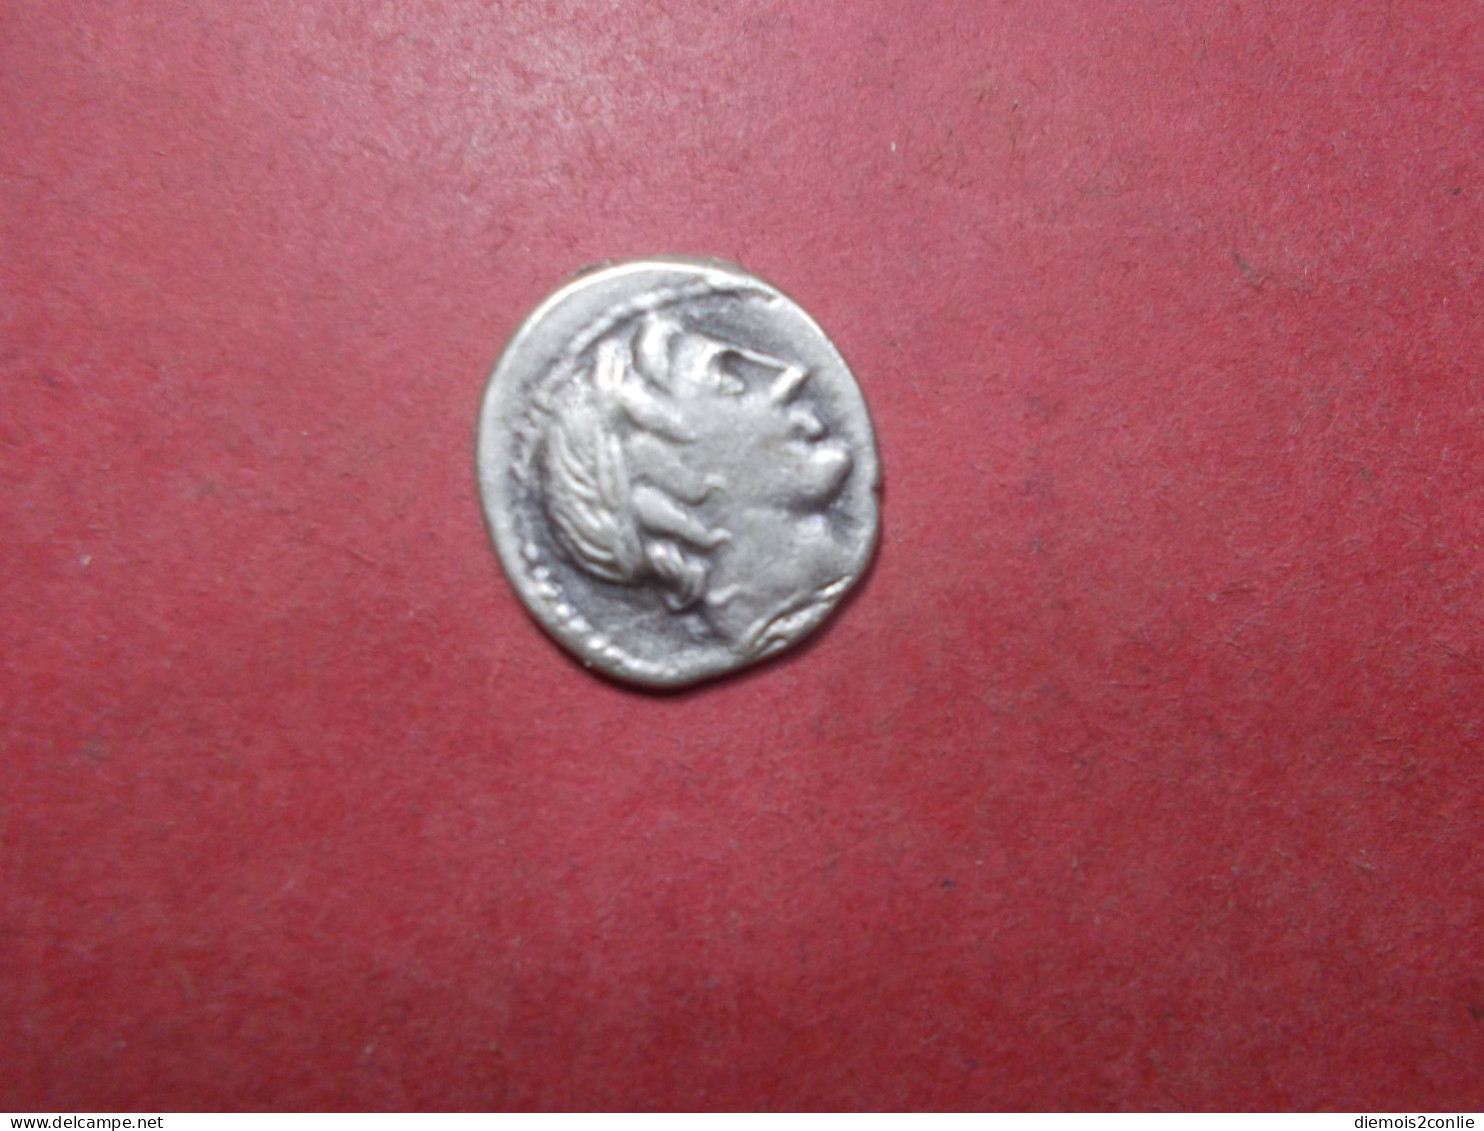 REPLIQUE COPIE Pièce Monnaie Denier Republique Romaine à Définir (P13) - Republiek (280 BC Tot 27 BC)